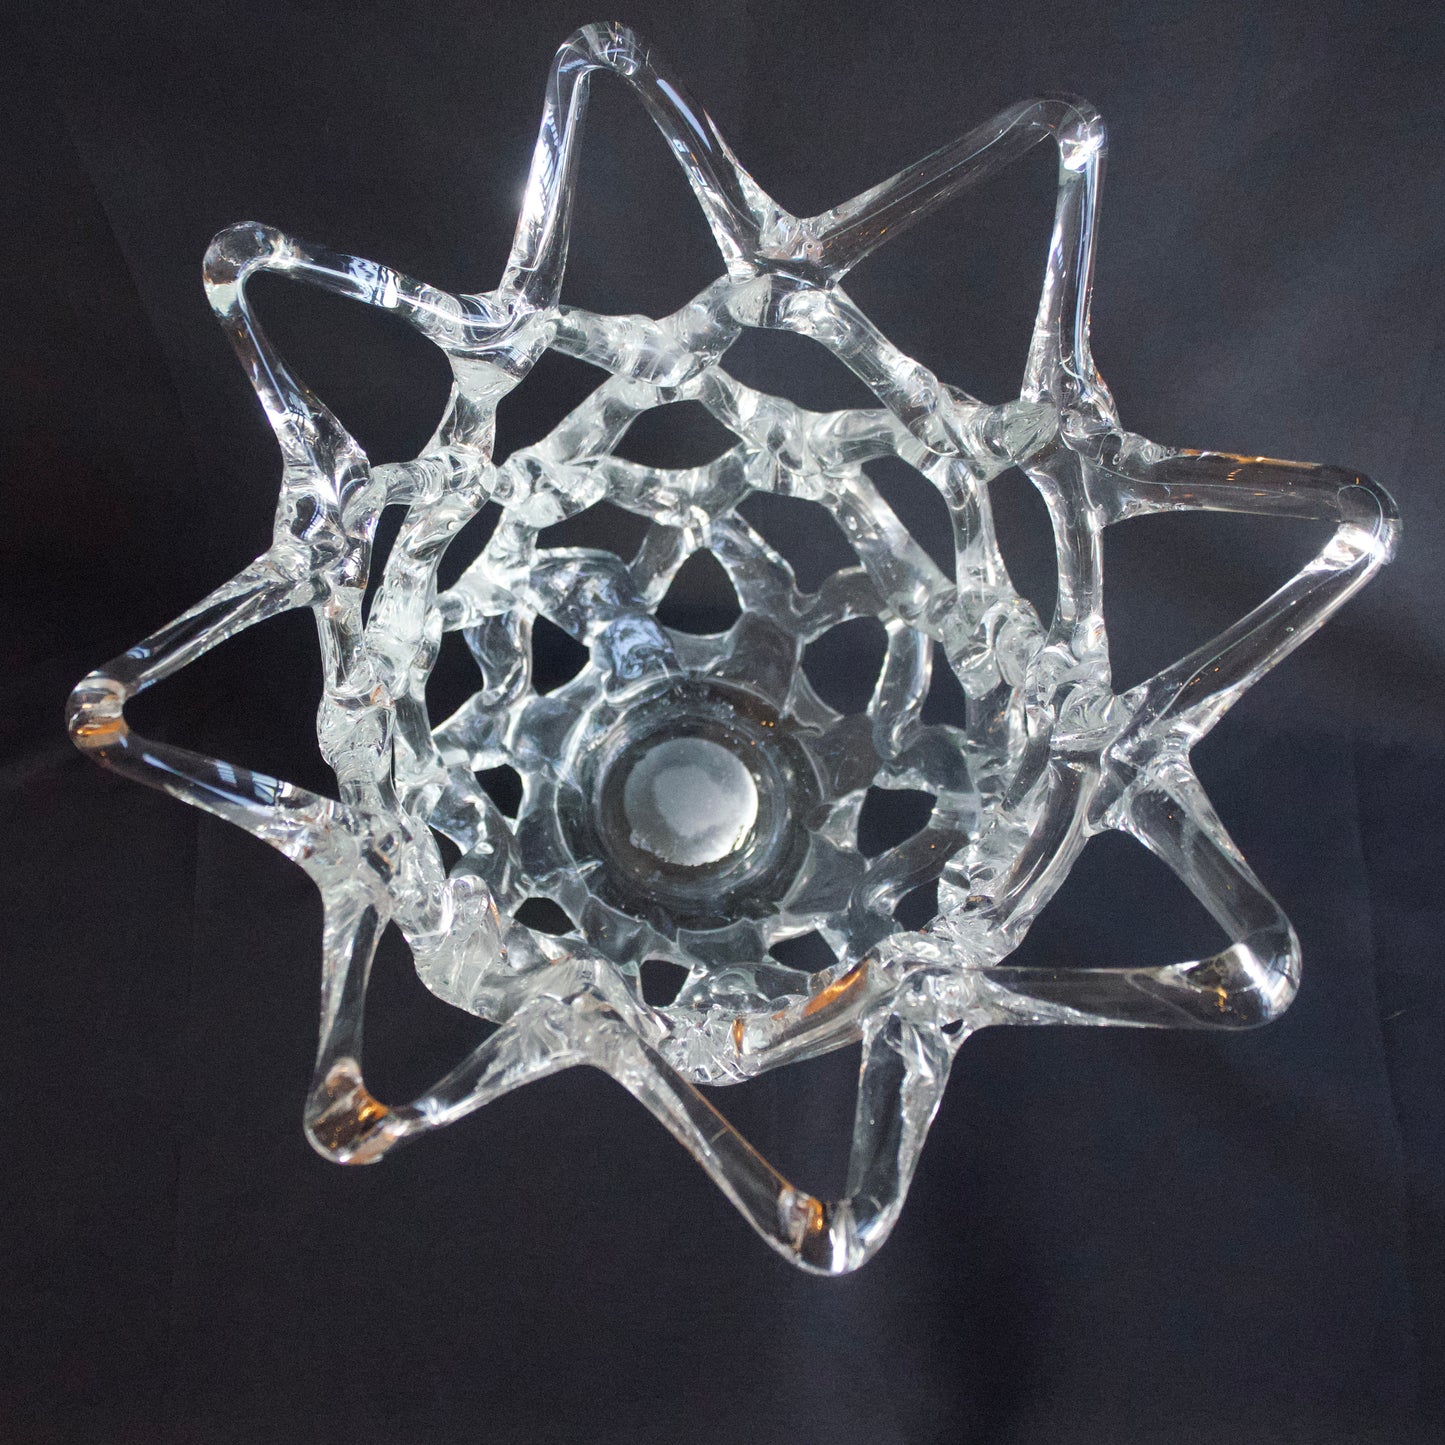 Brutalist “open basket” crystal bowl (11.25” tall. 11.75” wide)